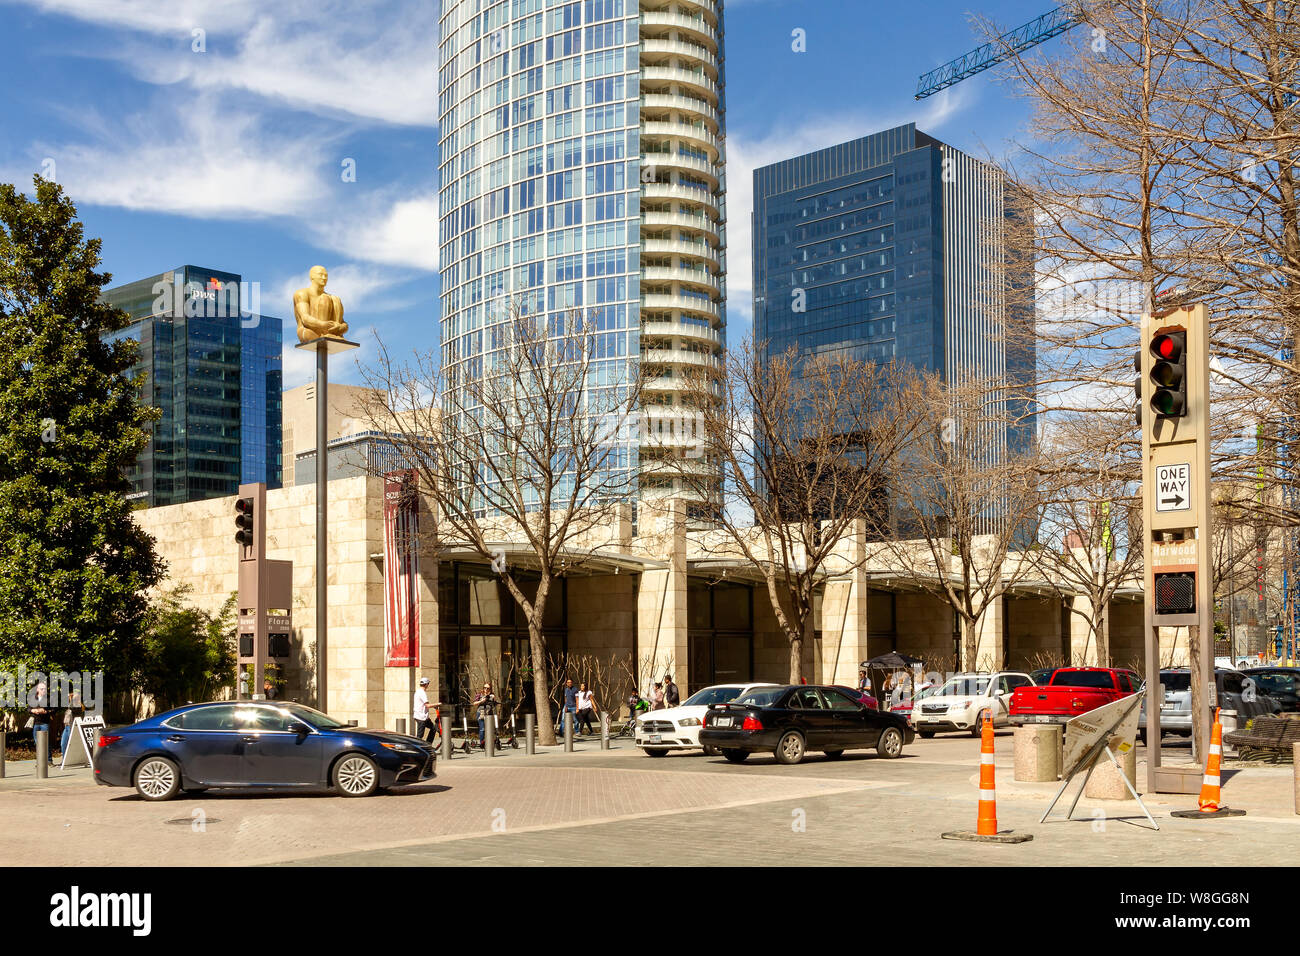 Distrito de Artes de Dallas, 16 de marzo de 2019: El Distrito de las Artes es un distrito de las artes escénicas y visuales en el centro de Dallas y el hogar de 13 instalaciones includin Foto de stock